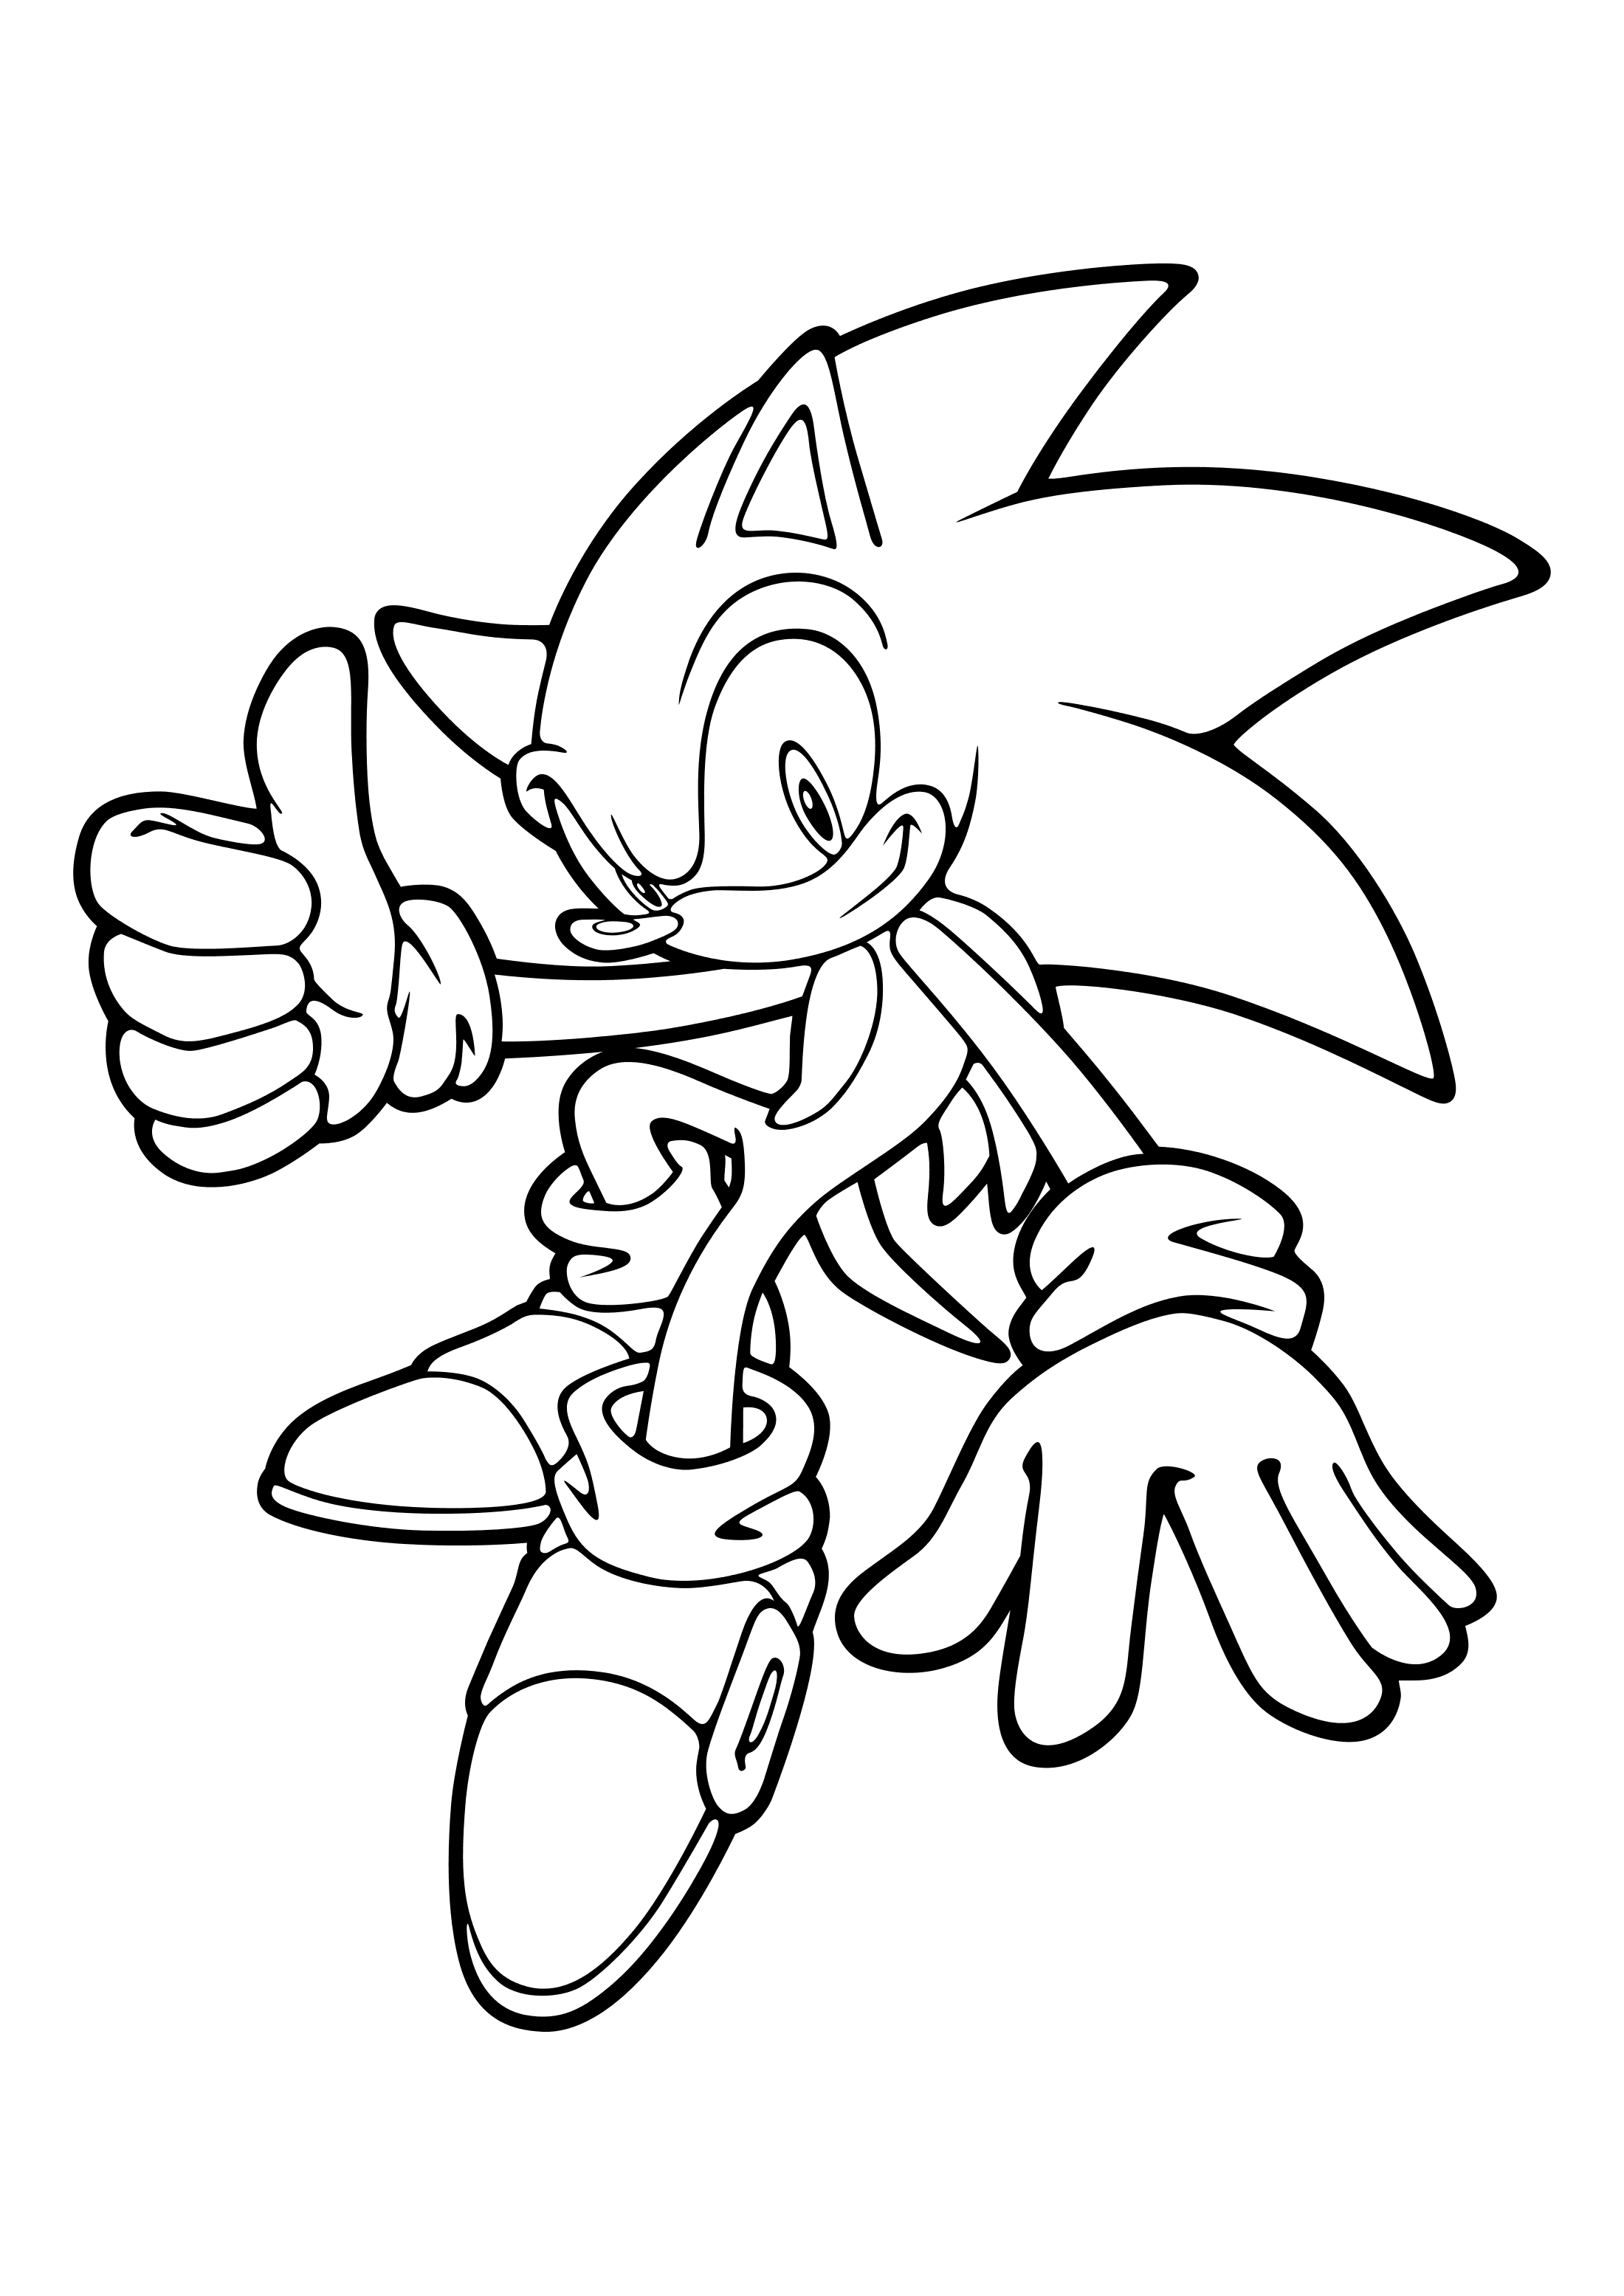 Para Colorear Sonic Muestra que todo está bien Imprimir